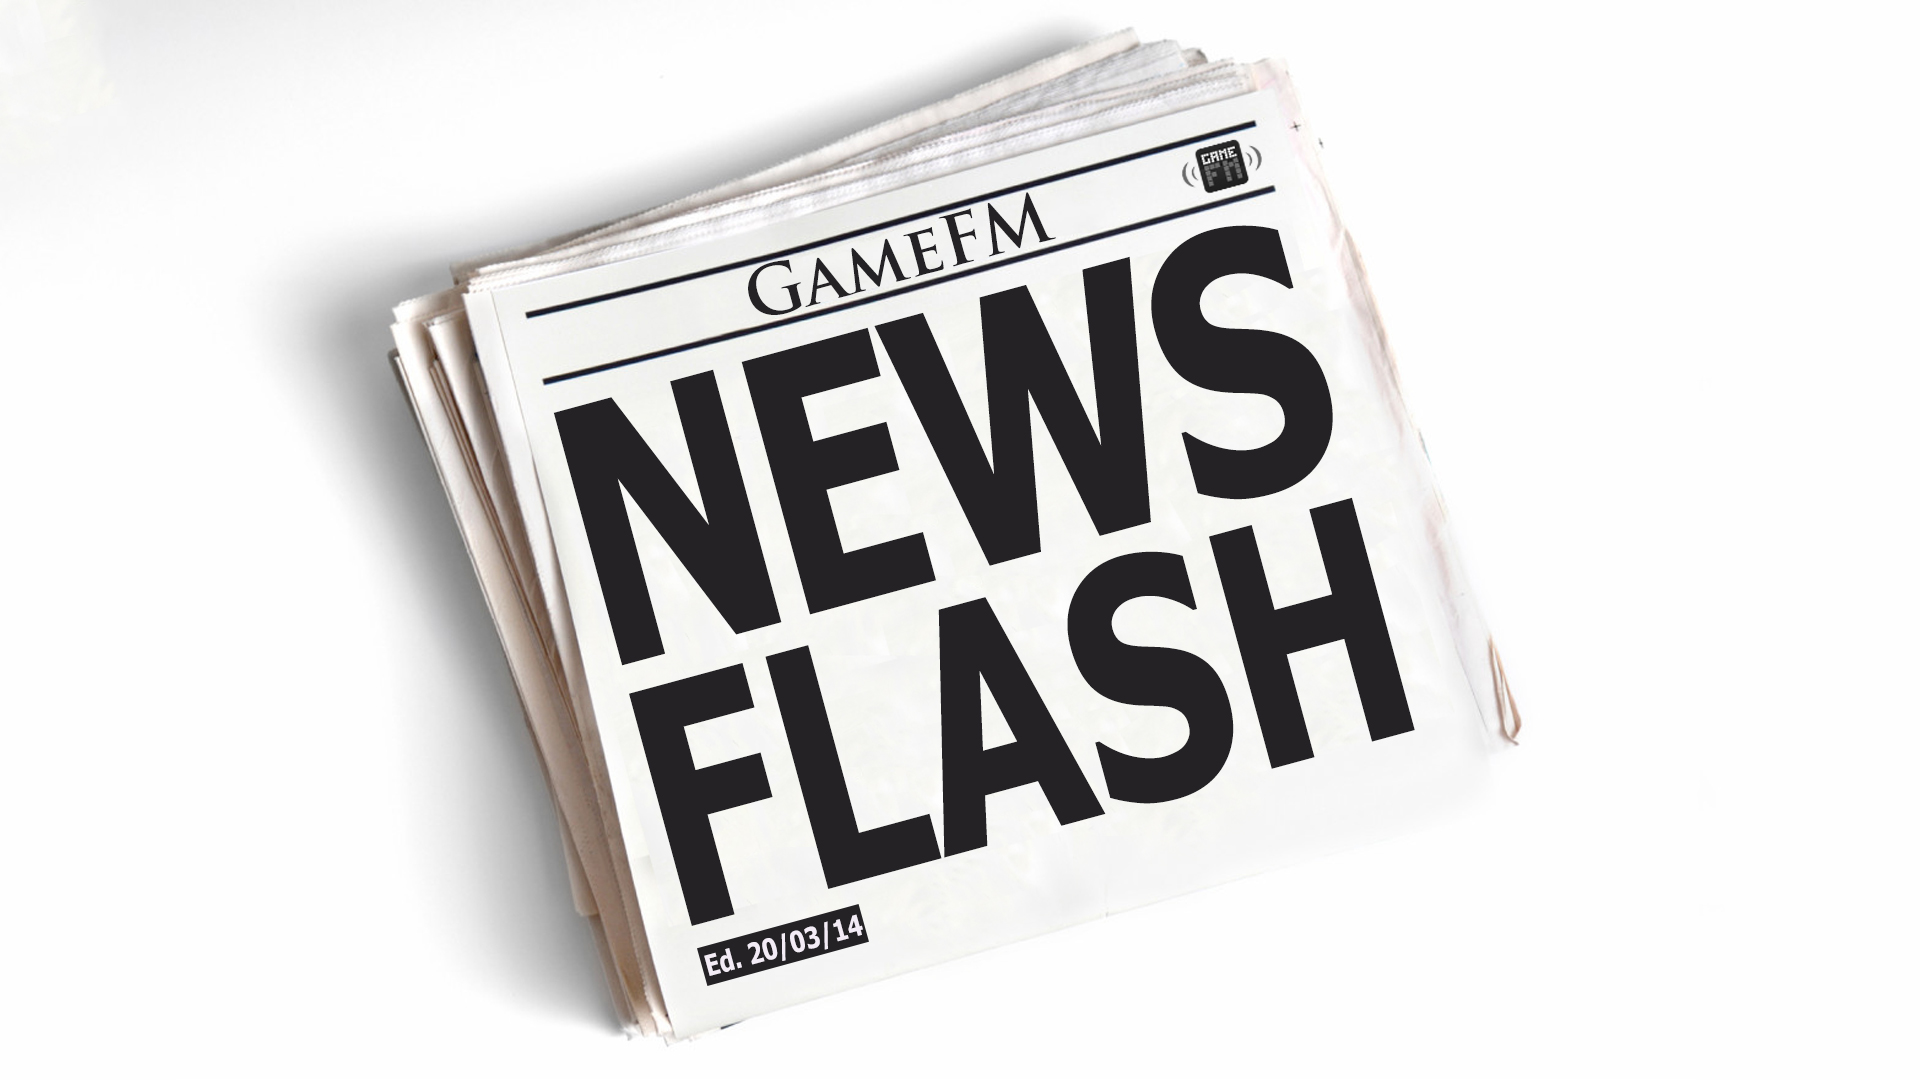 Saiu a nova edição do GameFM News Flash